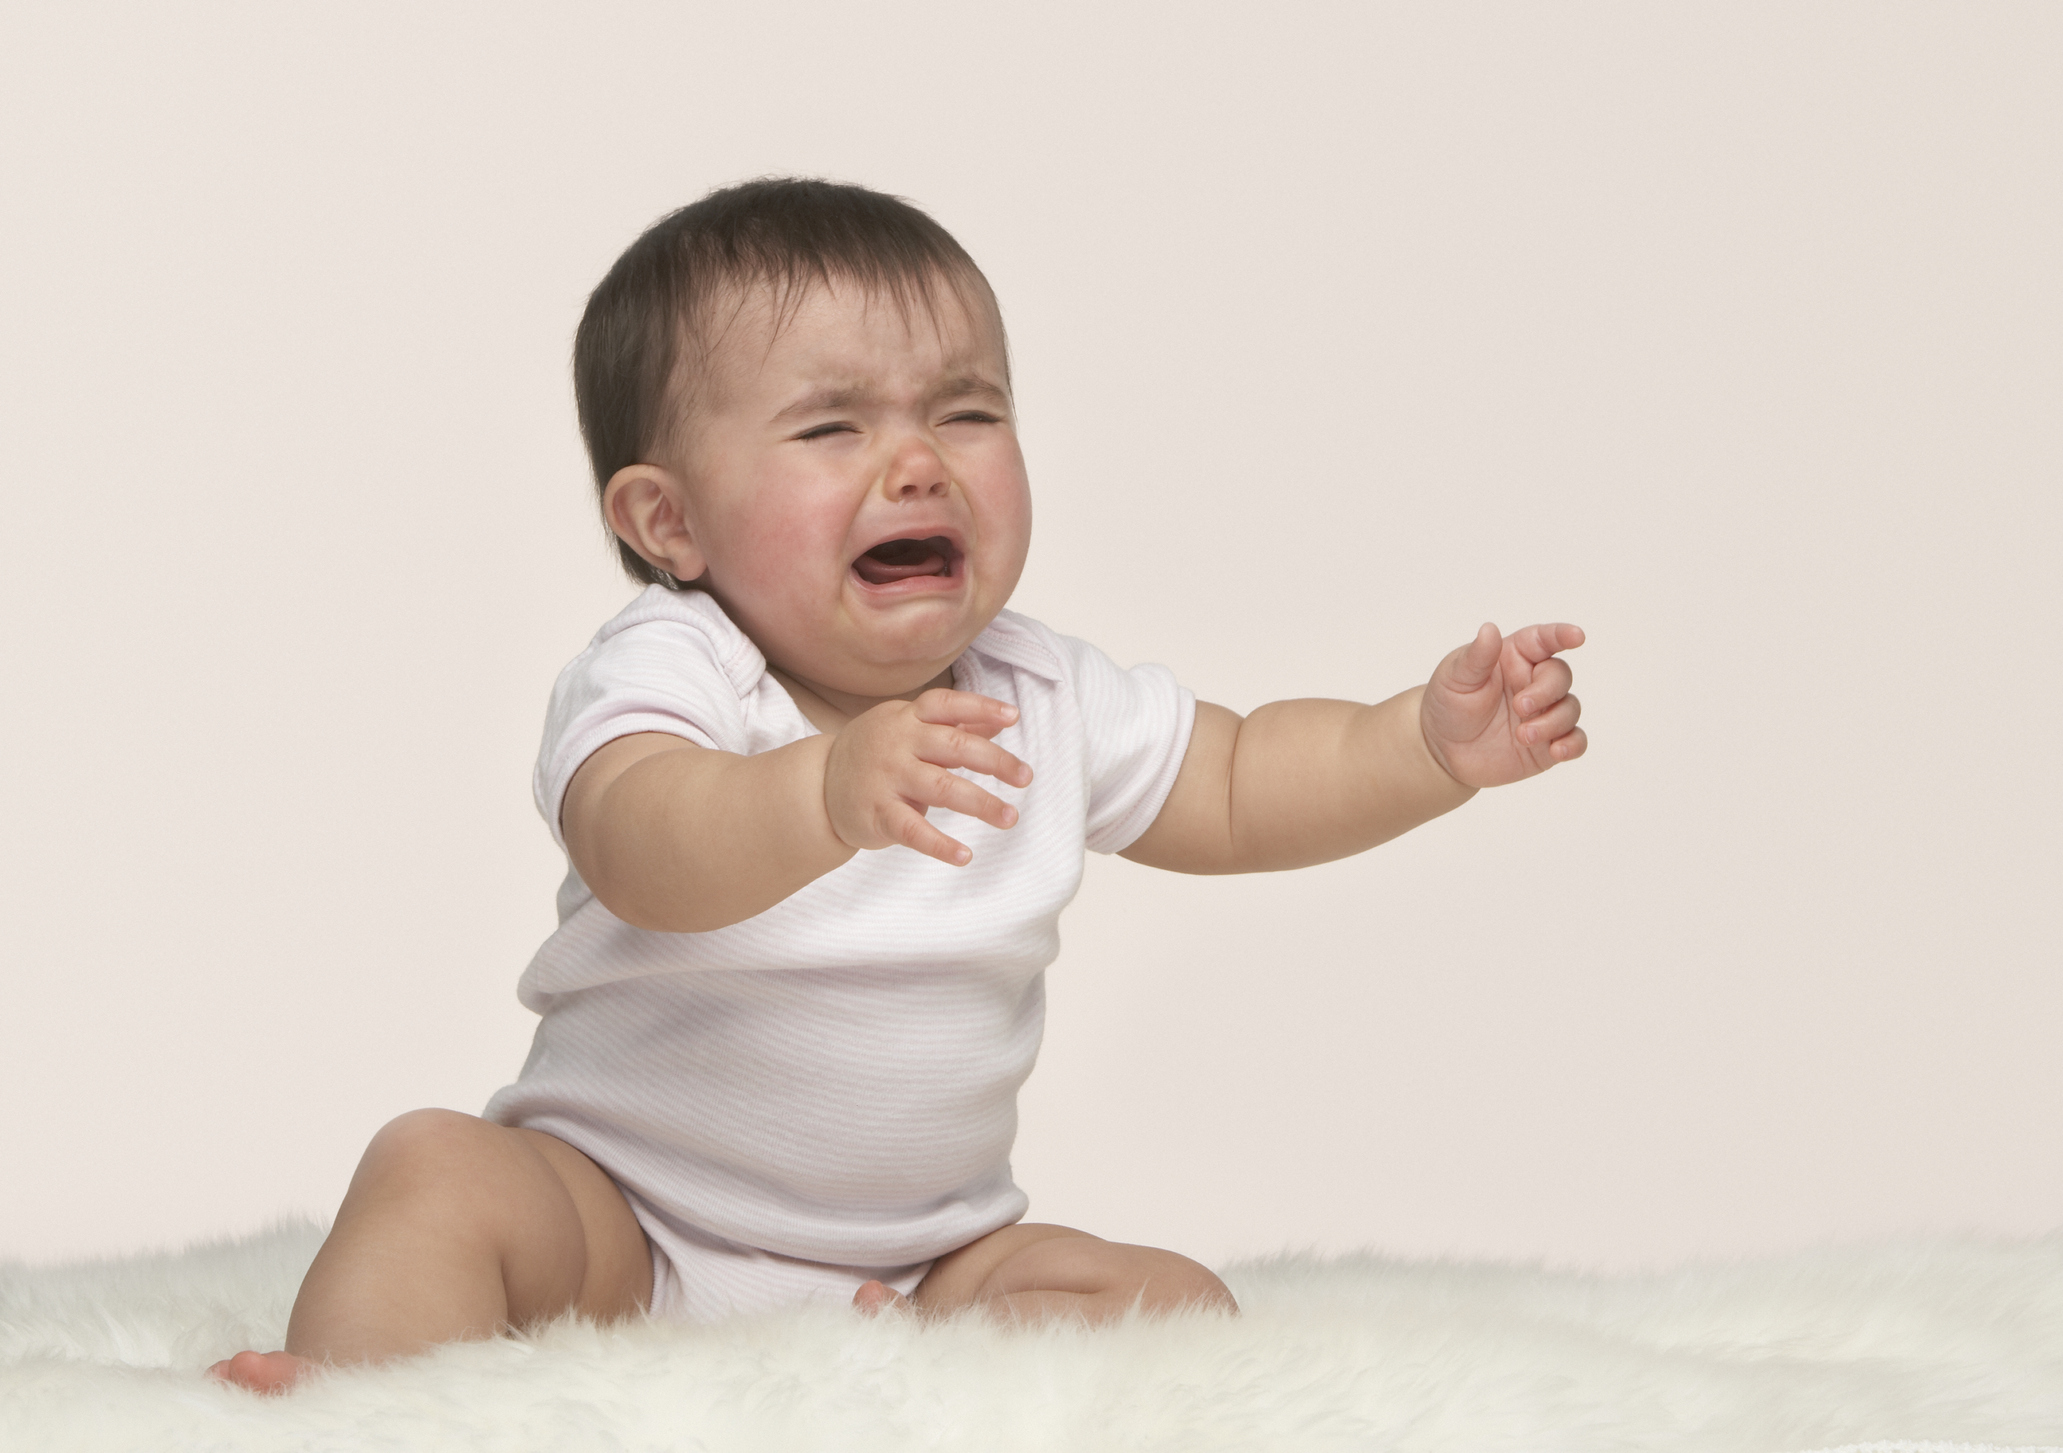 Новорожденный плачет. Как успокоить малыша?